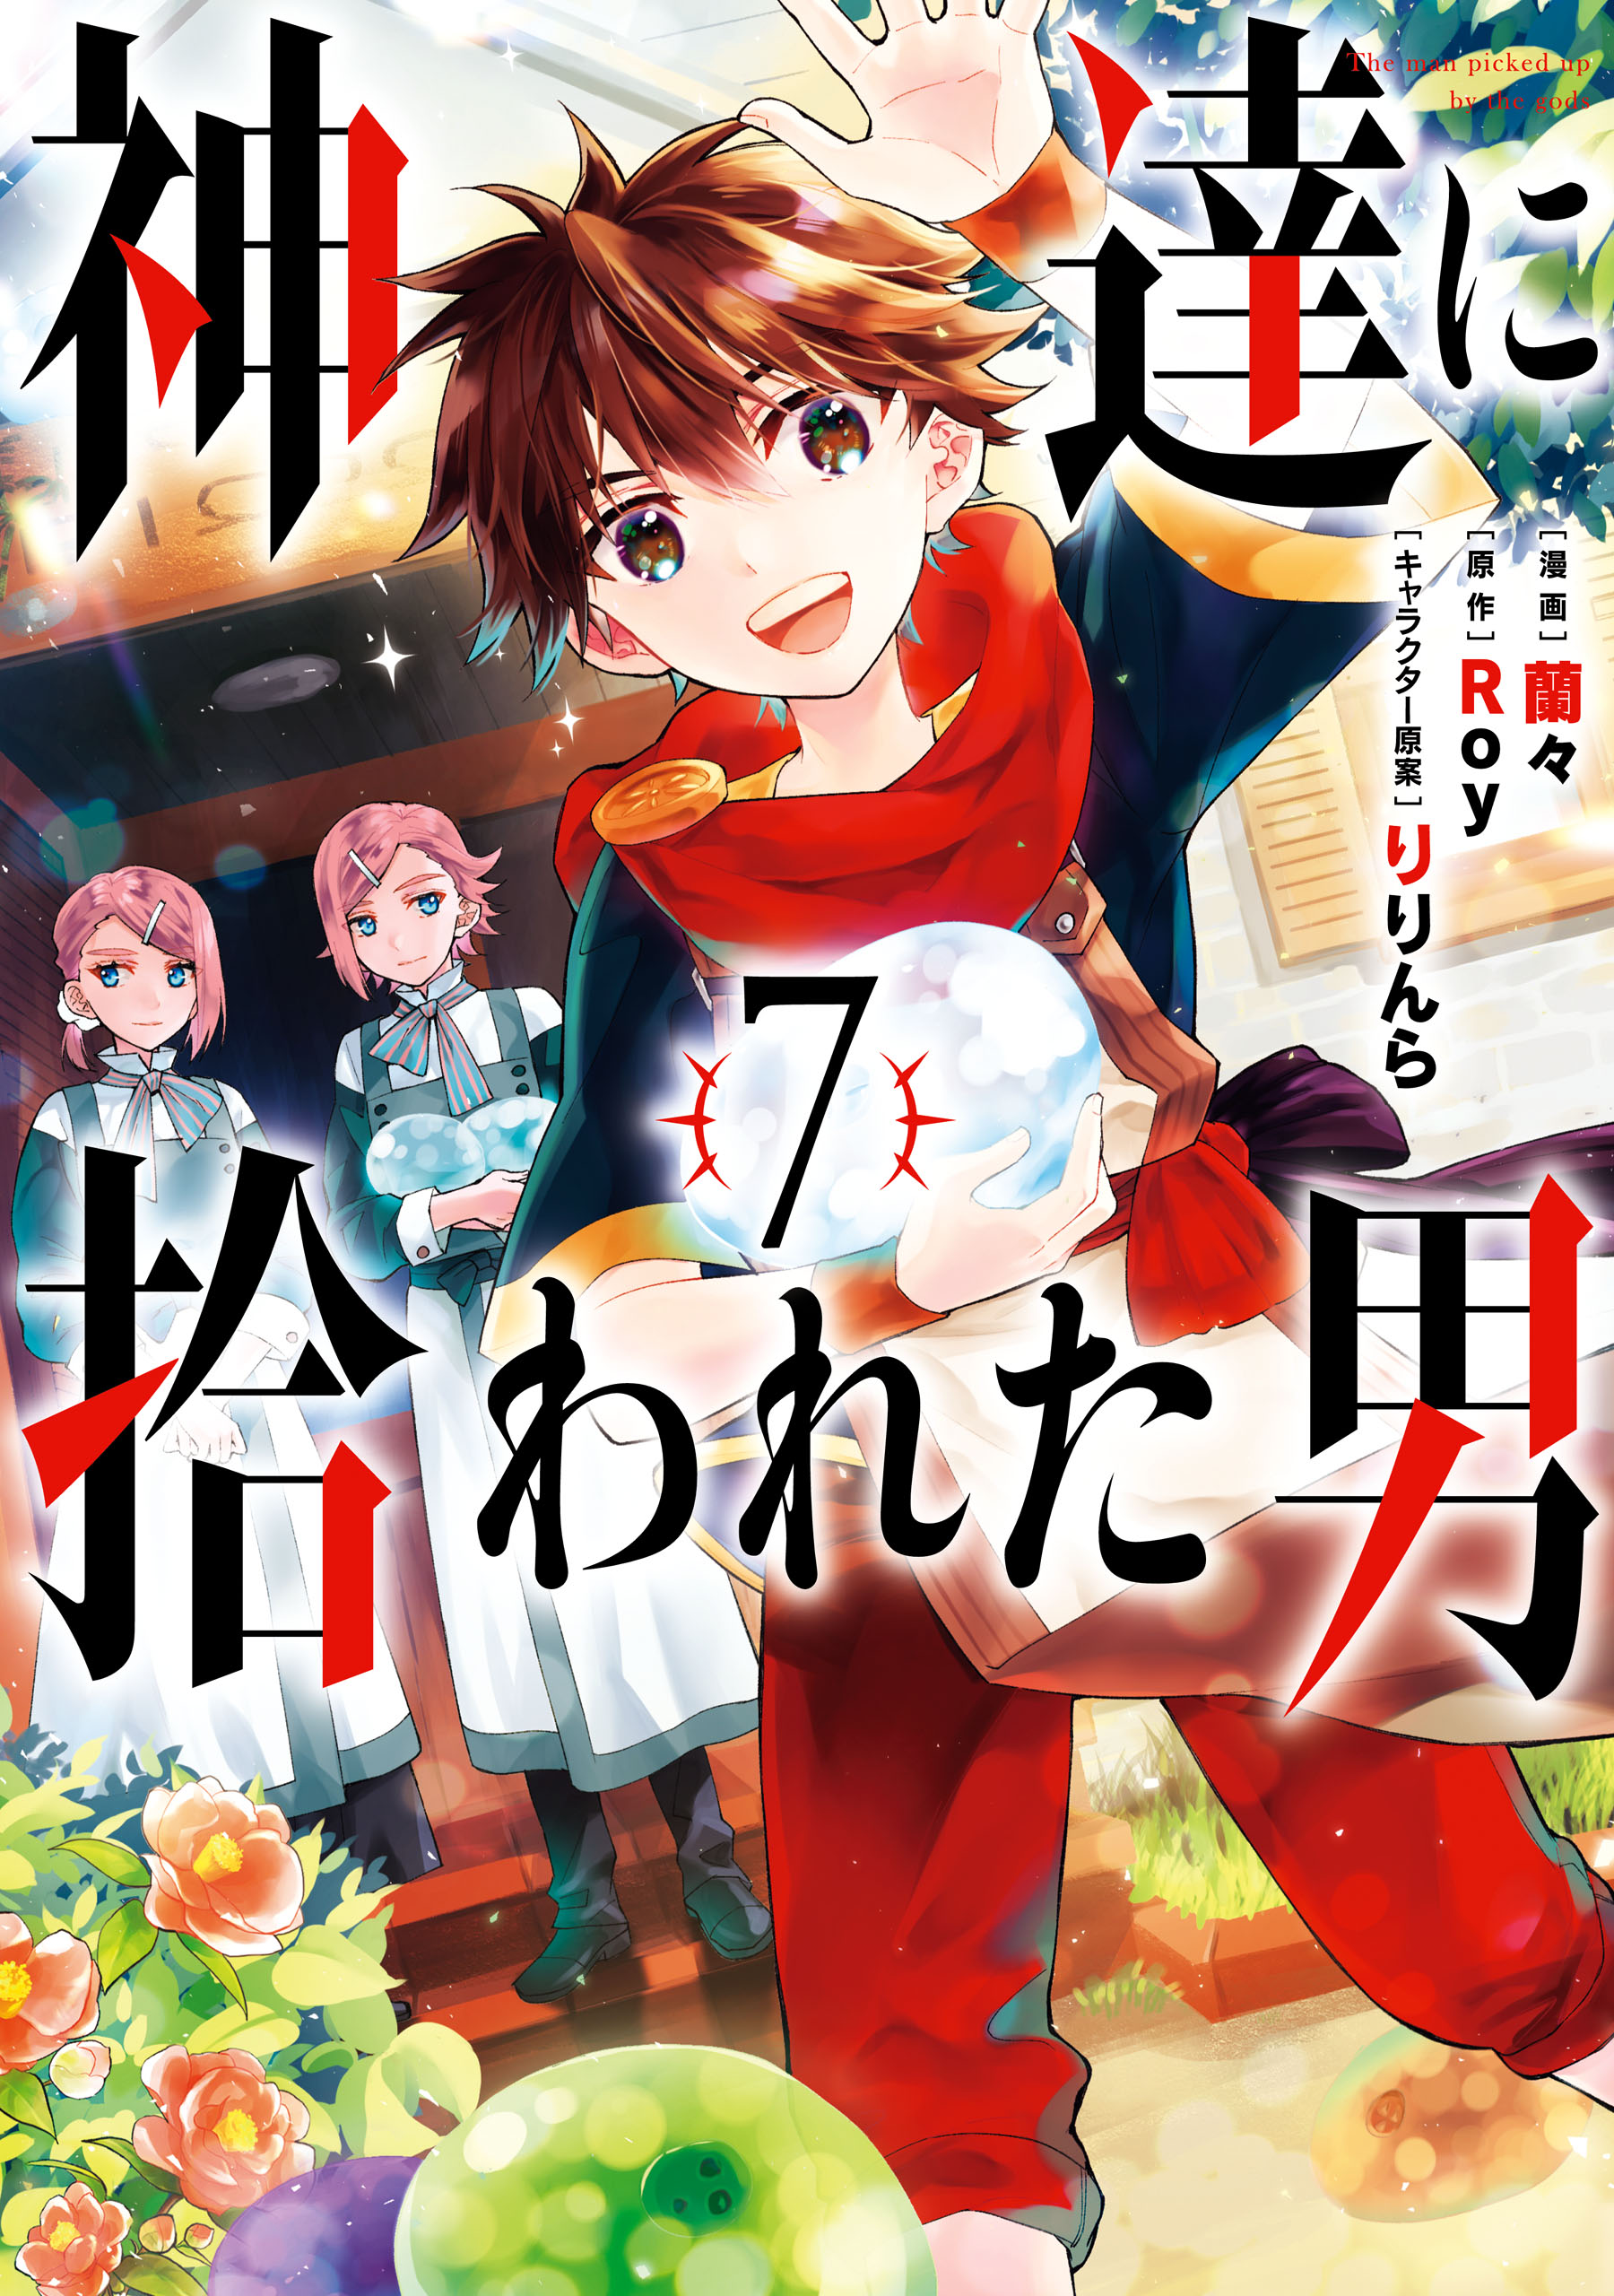 Versão mangá de Kamitachi ni Hirowareta Otoko ganha 9° volume enquanto 2ª  temporada do anime continua em produção!